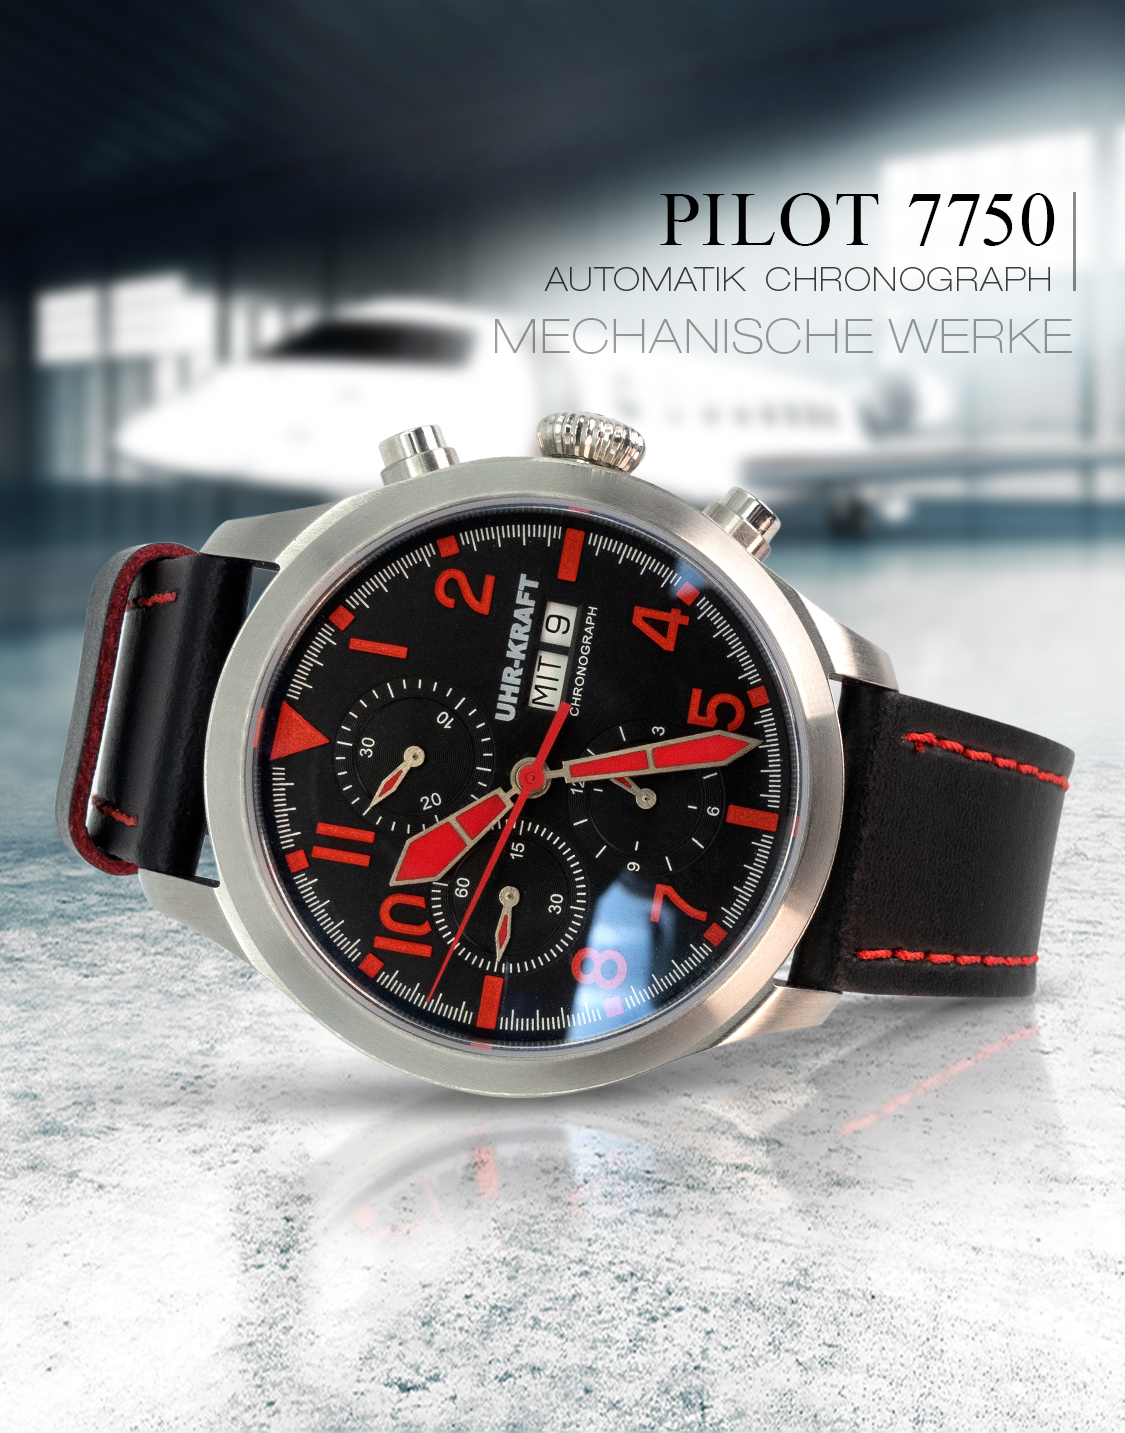 Pilot7750